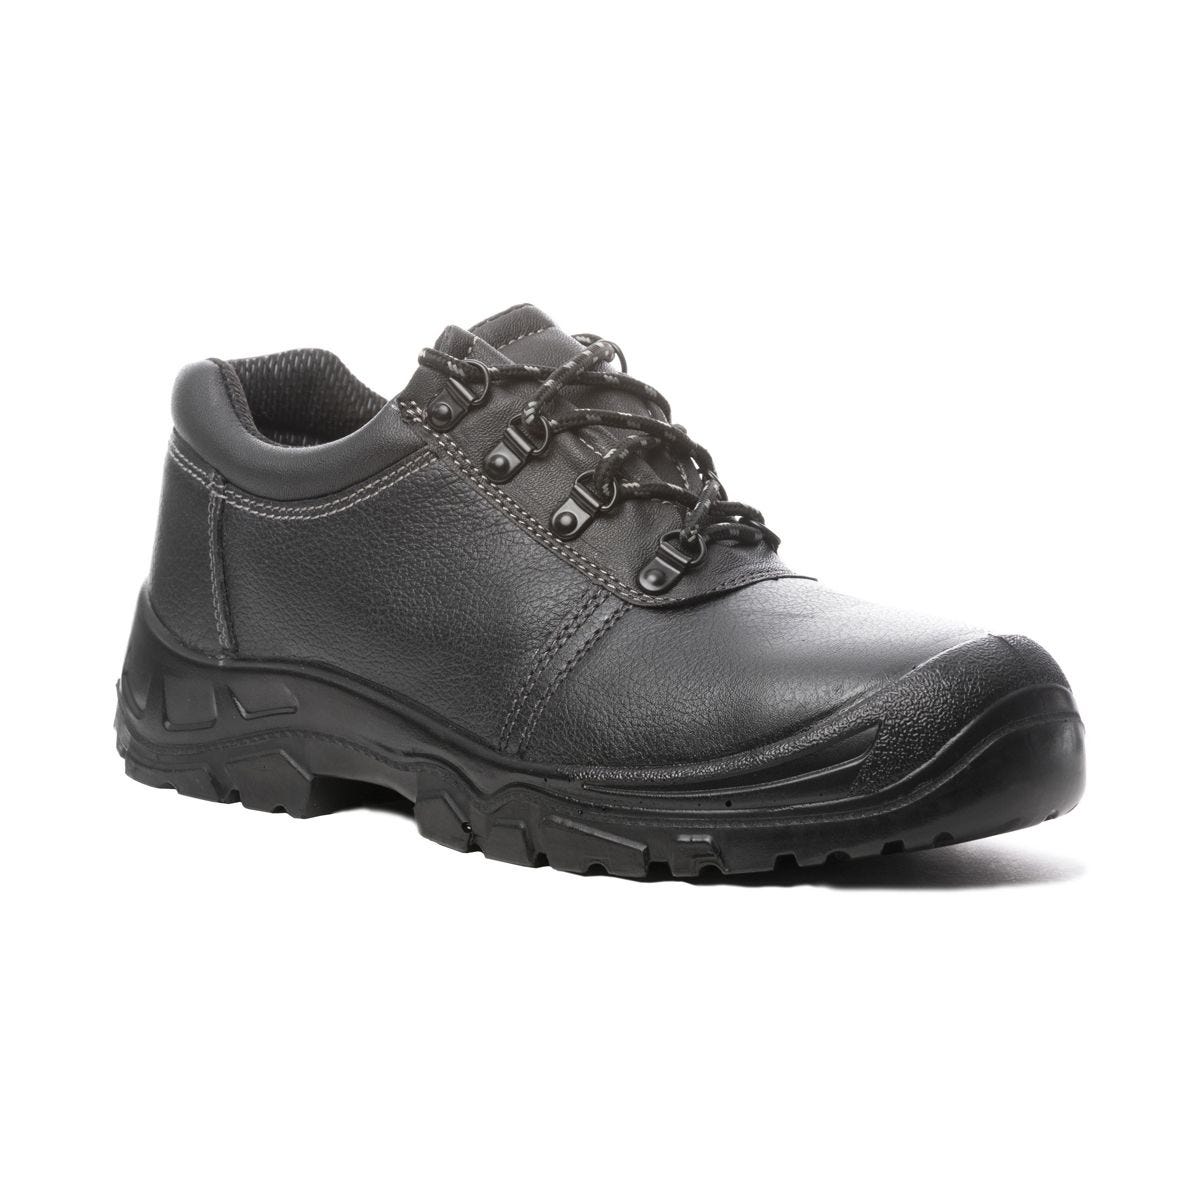 Chaussures de sécurité basses Azurite II S3 ESD noir - Coverguard - Taille 41 2